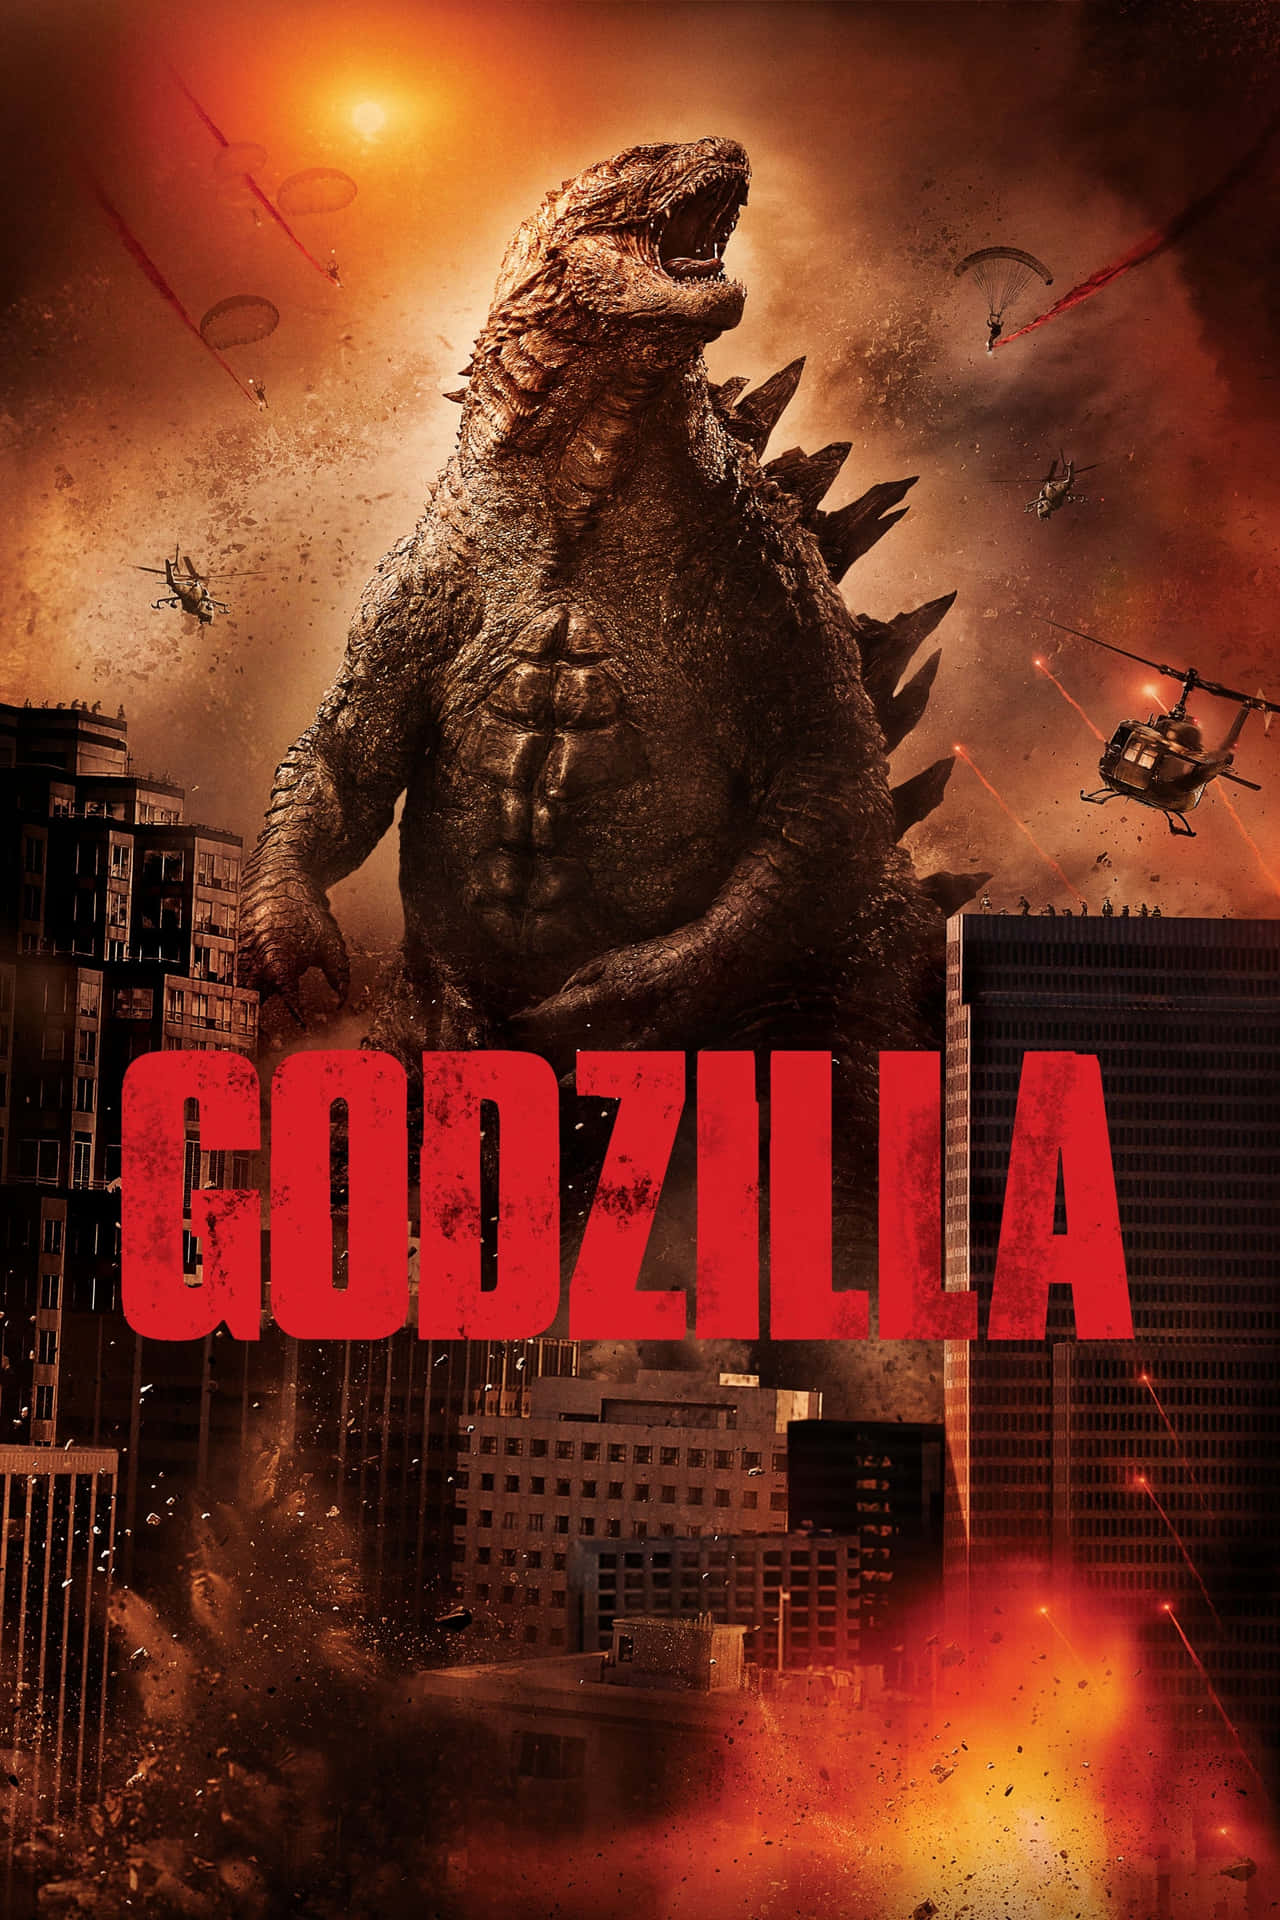 Godzillafilmplakat In Der Stadt Bild